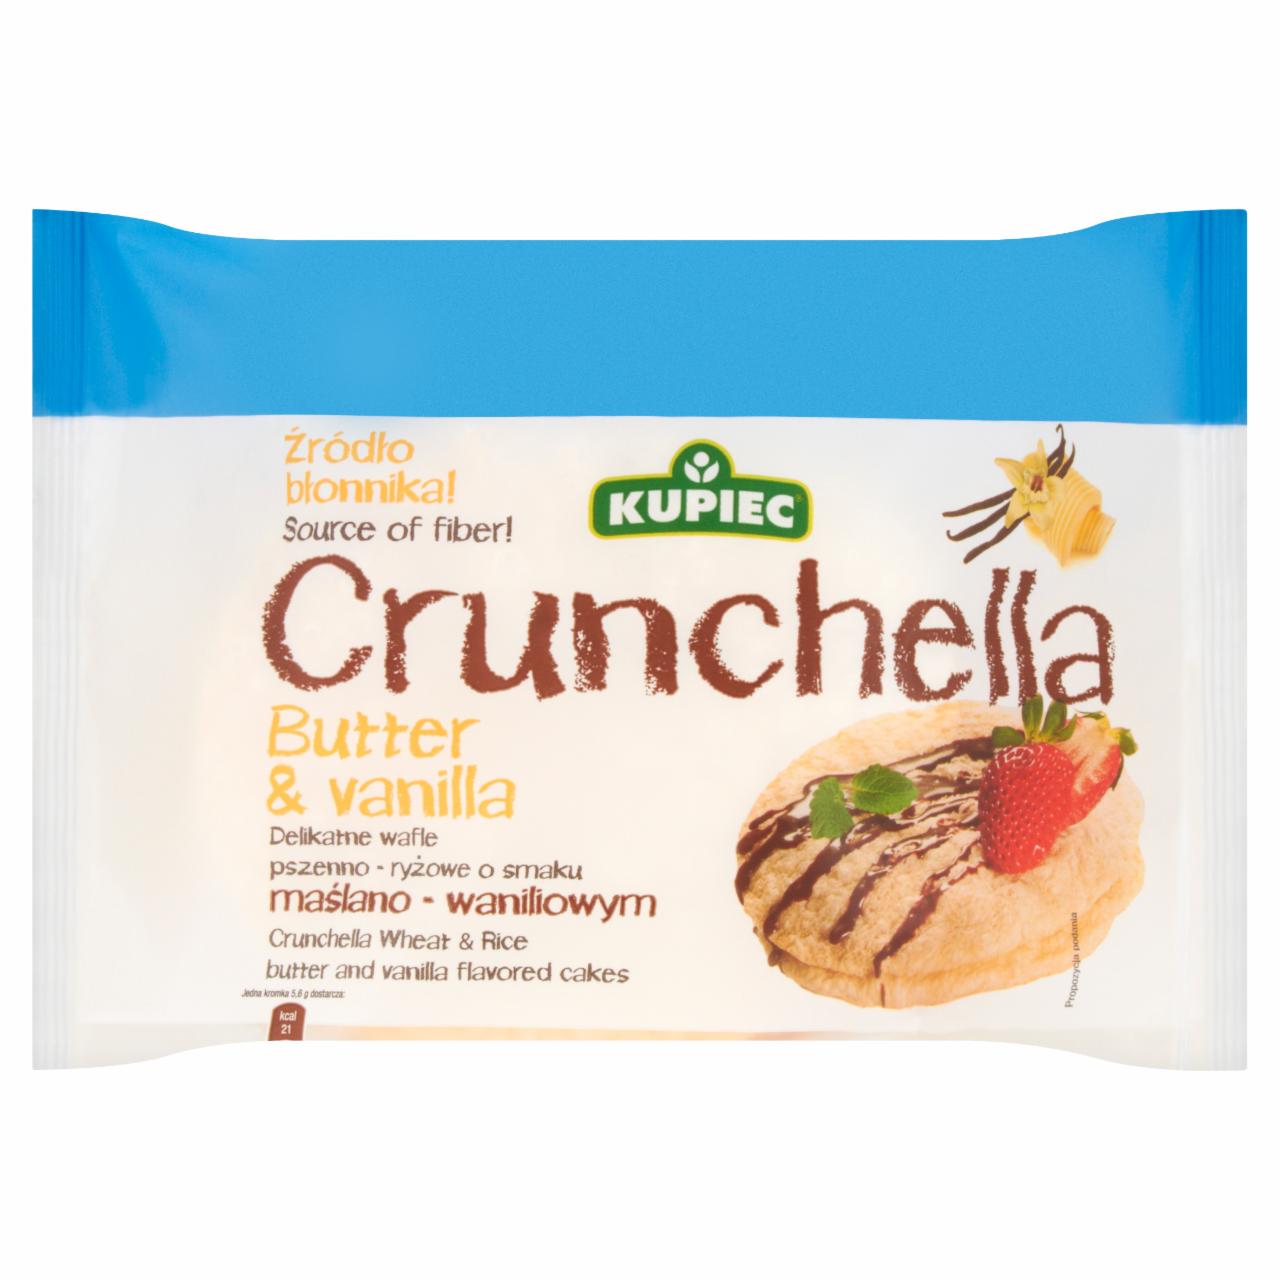 Zdjęcia - Kupiec Crunchella Butter and Vanilla Delikatne wafle pszenno-ryżowe o smaku maślano-waniliowym 44 g